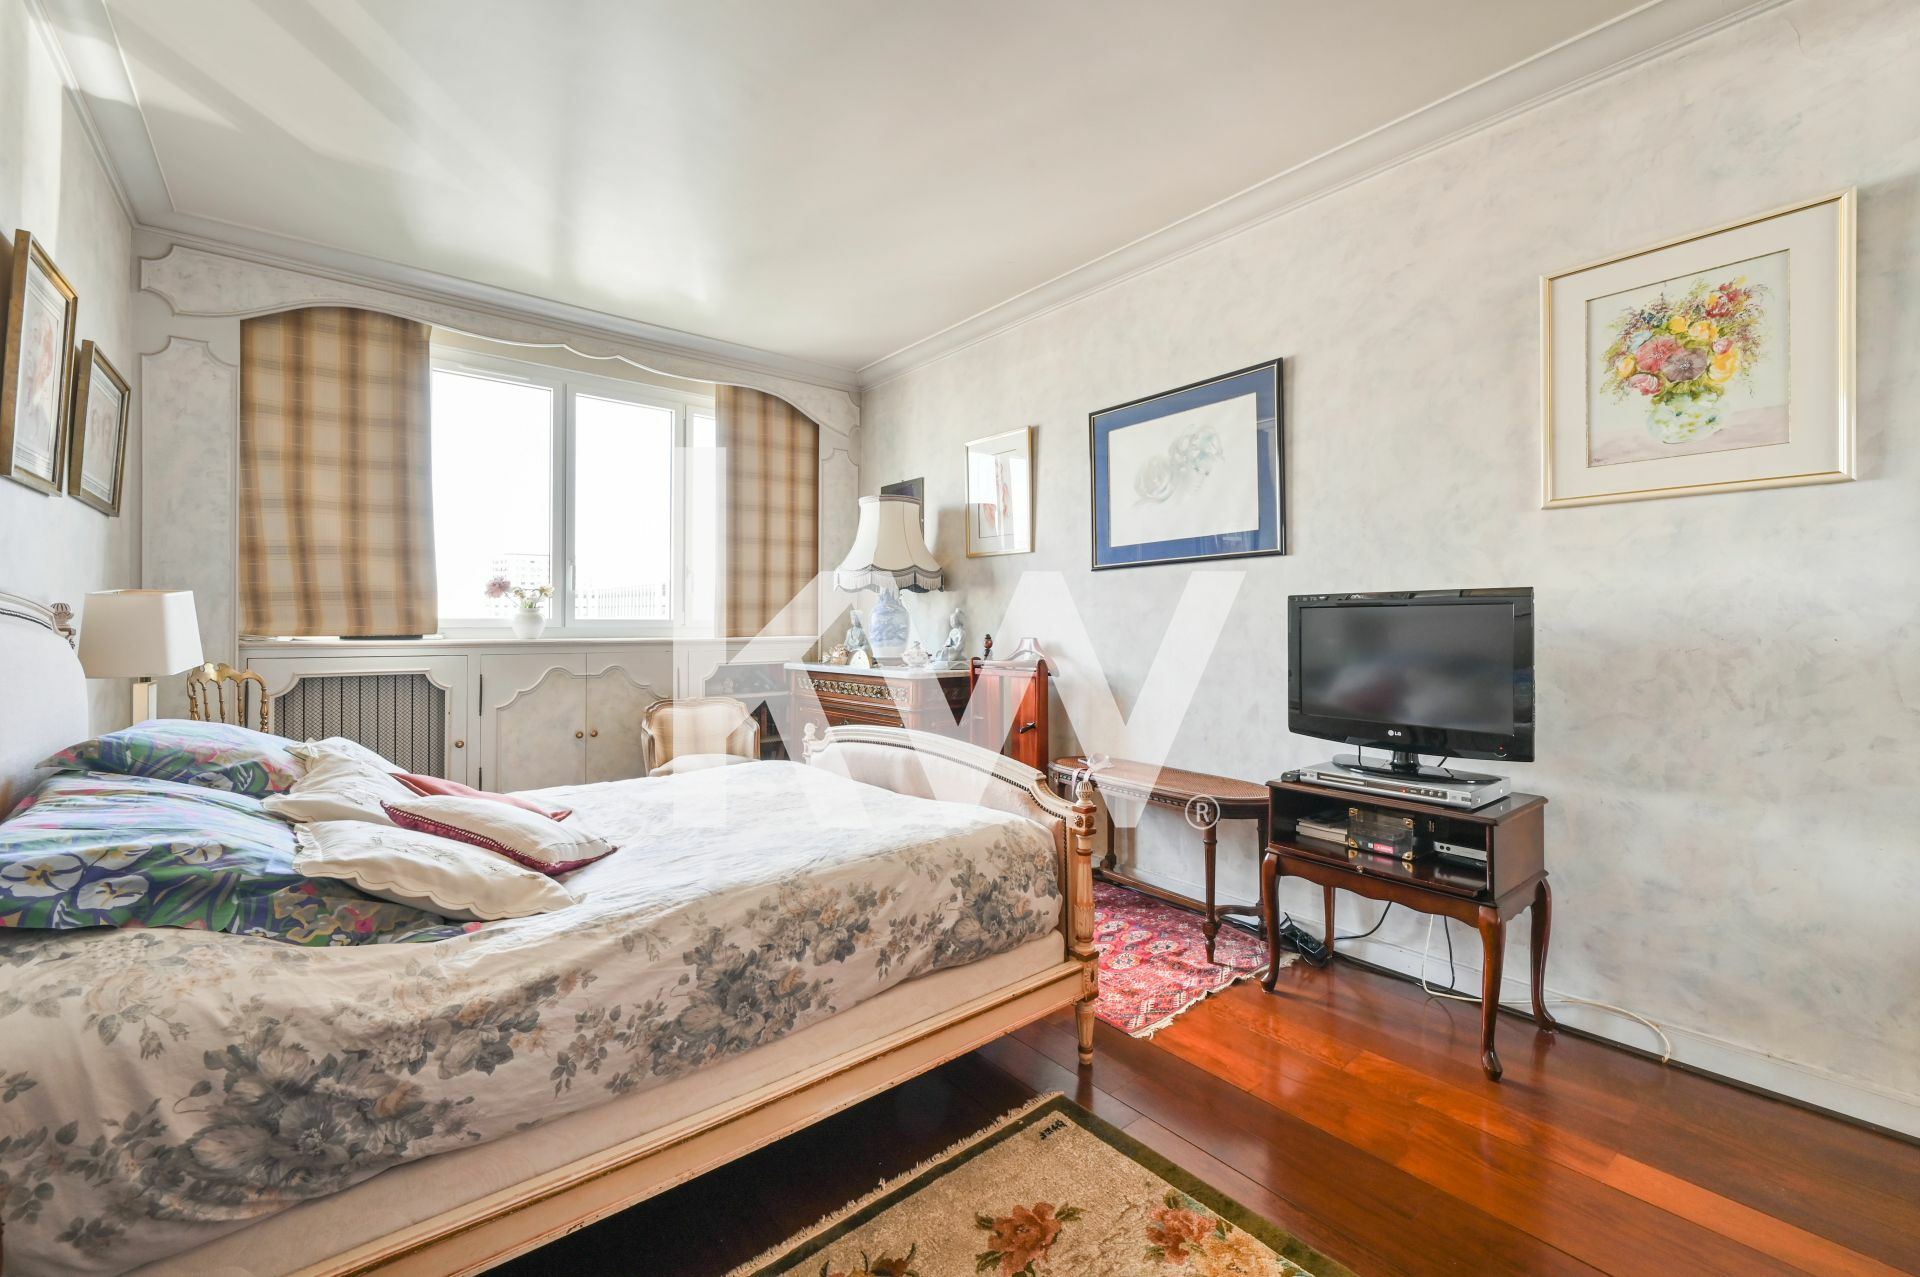 VENTE : appartement de 4 pièces (132 m²) dans le 17e arrondissement de Pari (10/11)